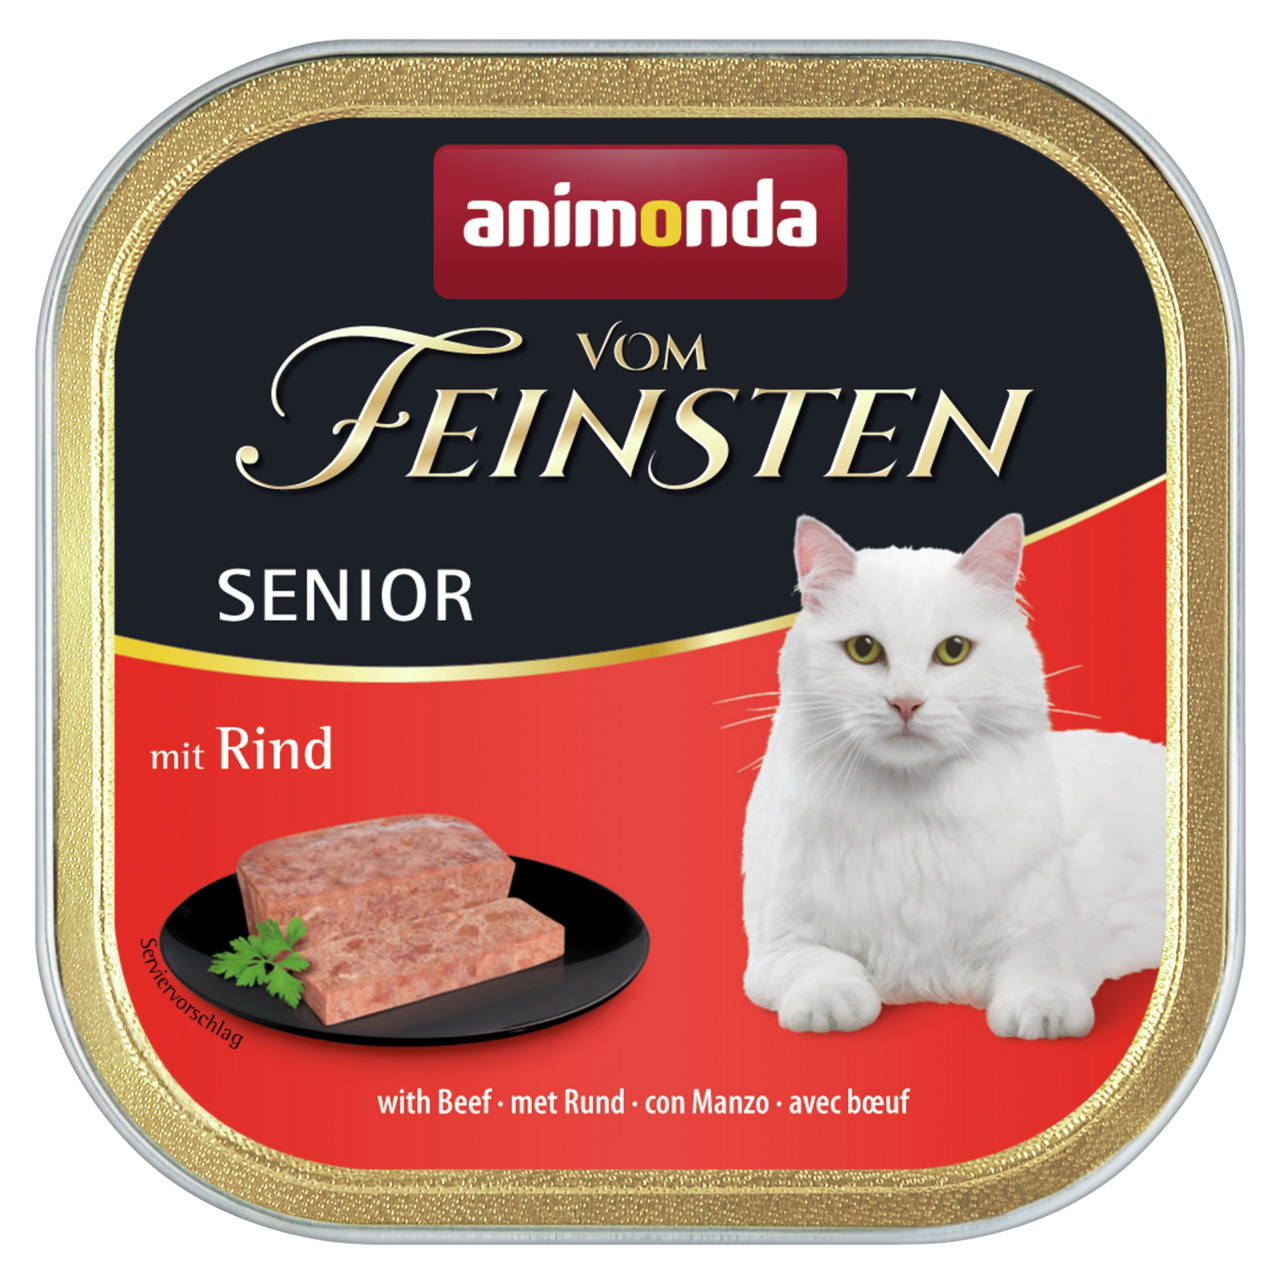 Animonda Vom Feinsten Senior mit Rind Katzen Nassfutter 100 g